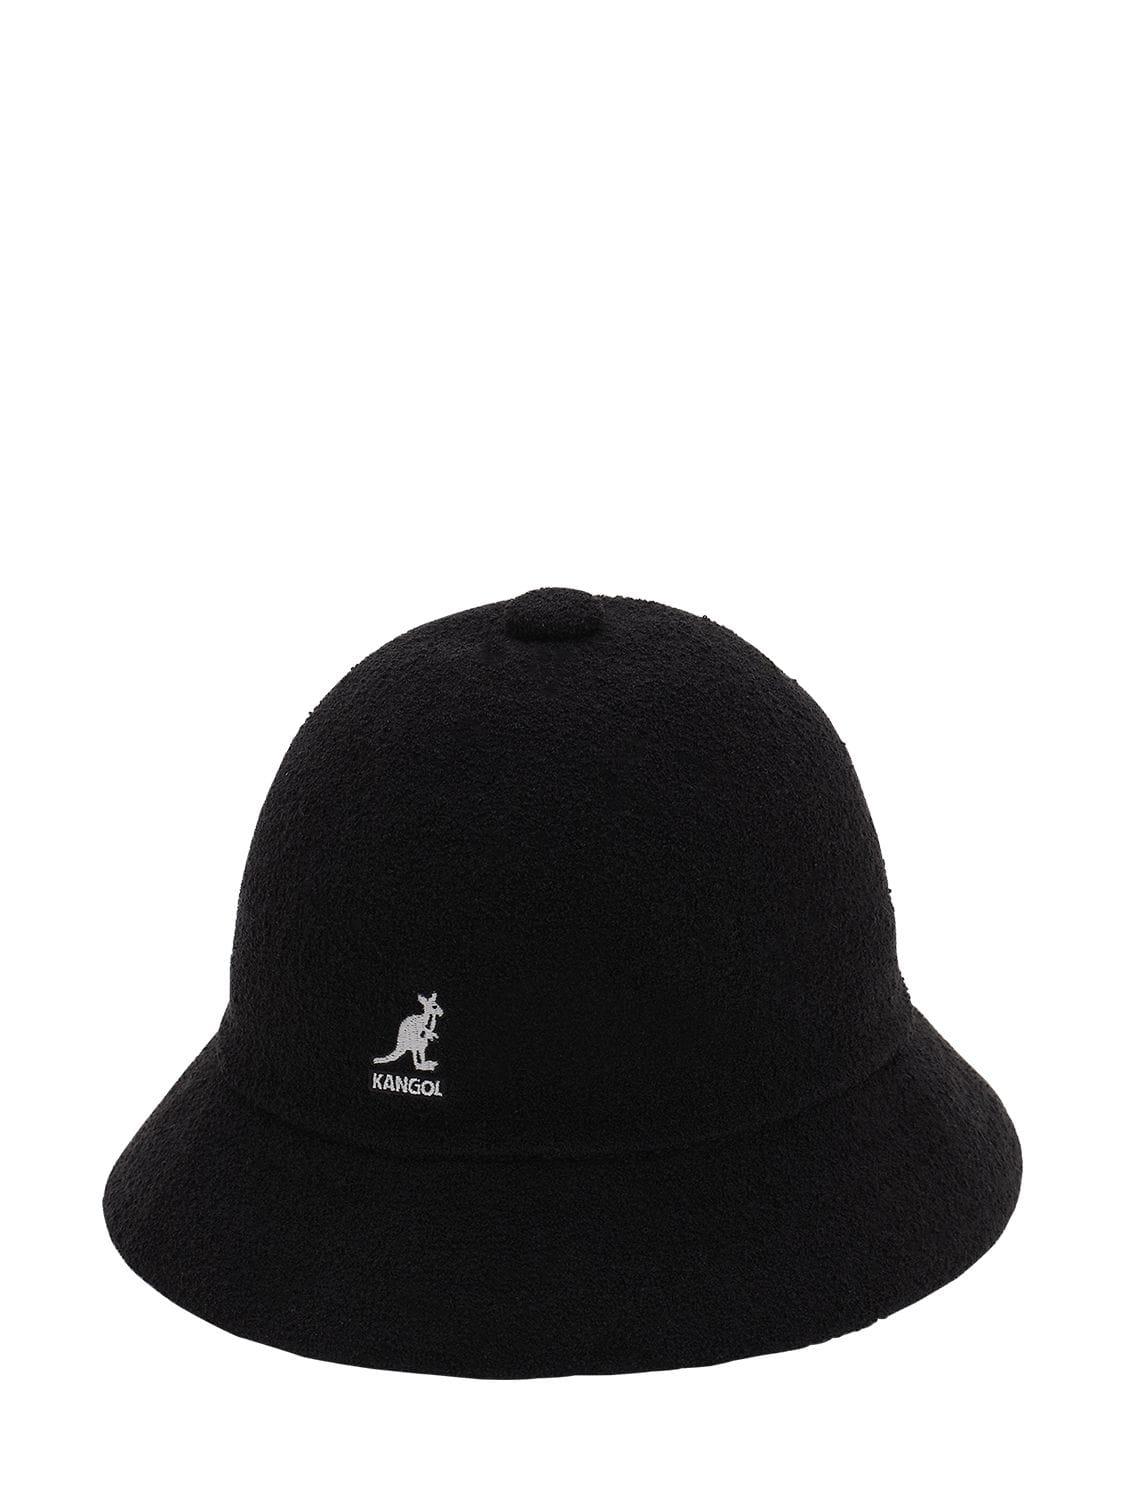 Kangol Bermuda Casual Bucket Hat in Black for Men - Lyst